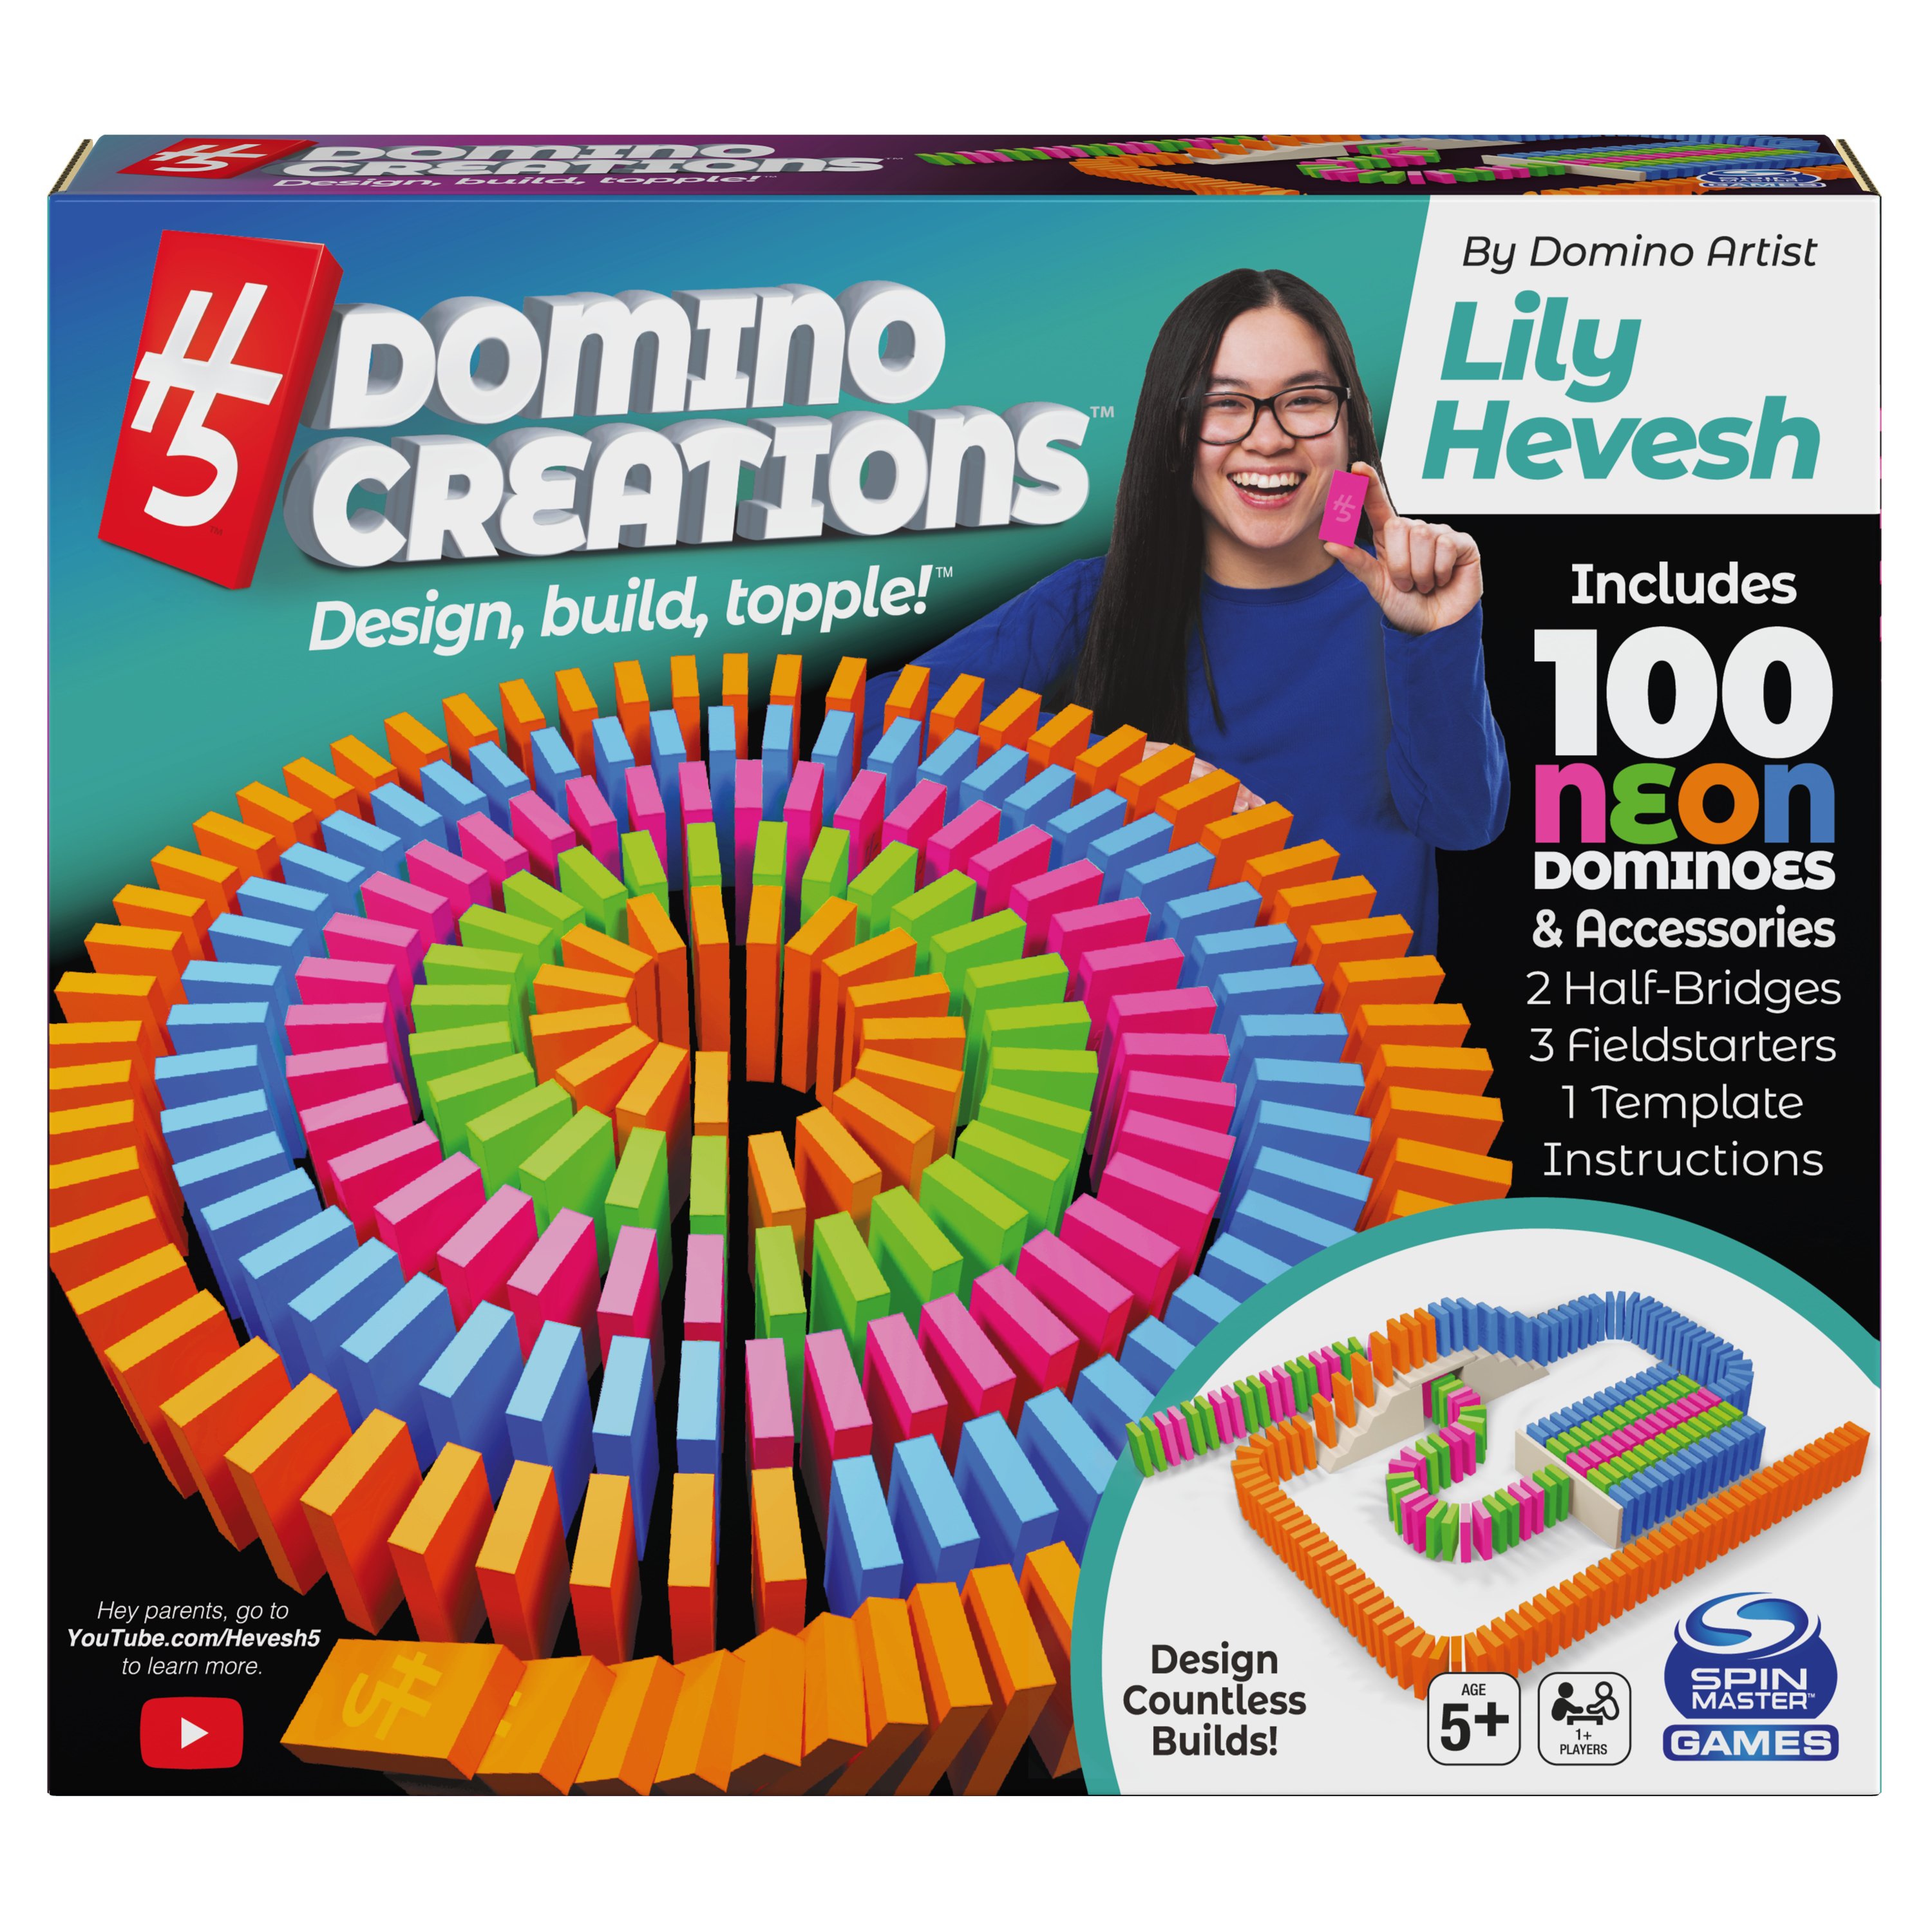 Spin Master Juegos H5 Domino Creations 100 piezas conjunto por Lily hevesh para familias 